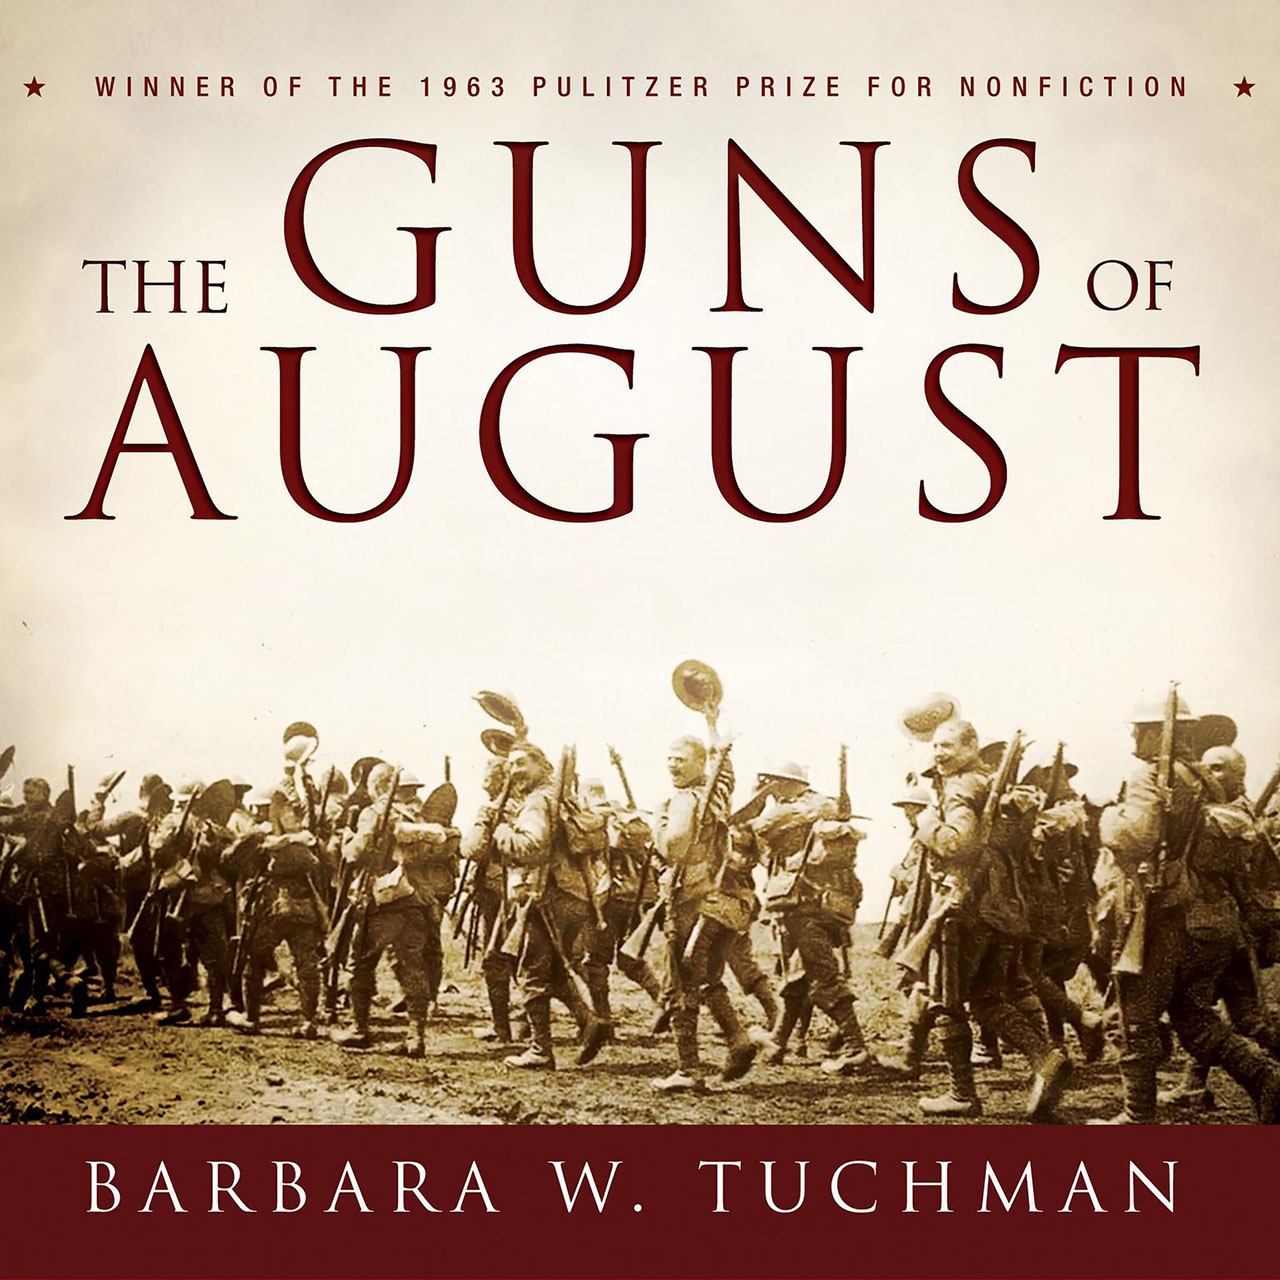 Трагические события того времени талантливо описаны в книге «Августовские пушки» американской писательницы и историка Барбары Вертхайм Такман.